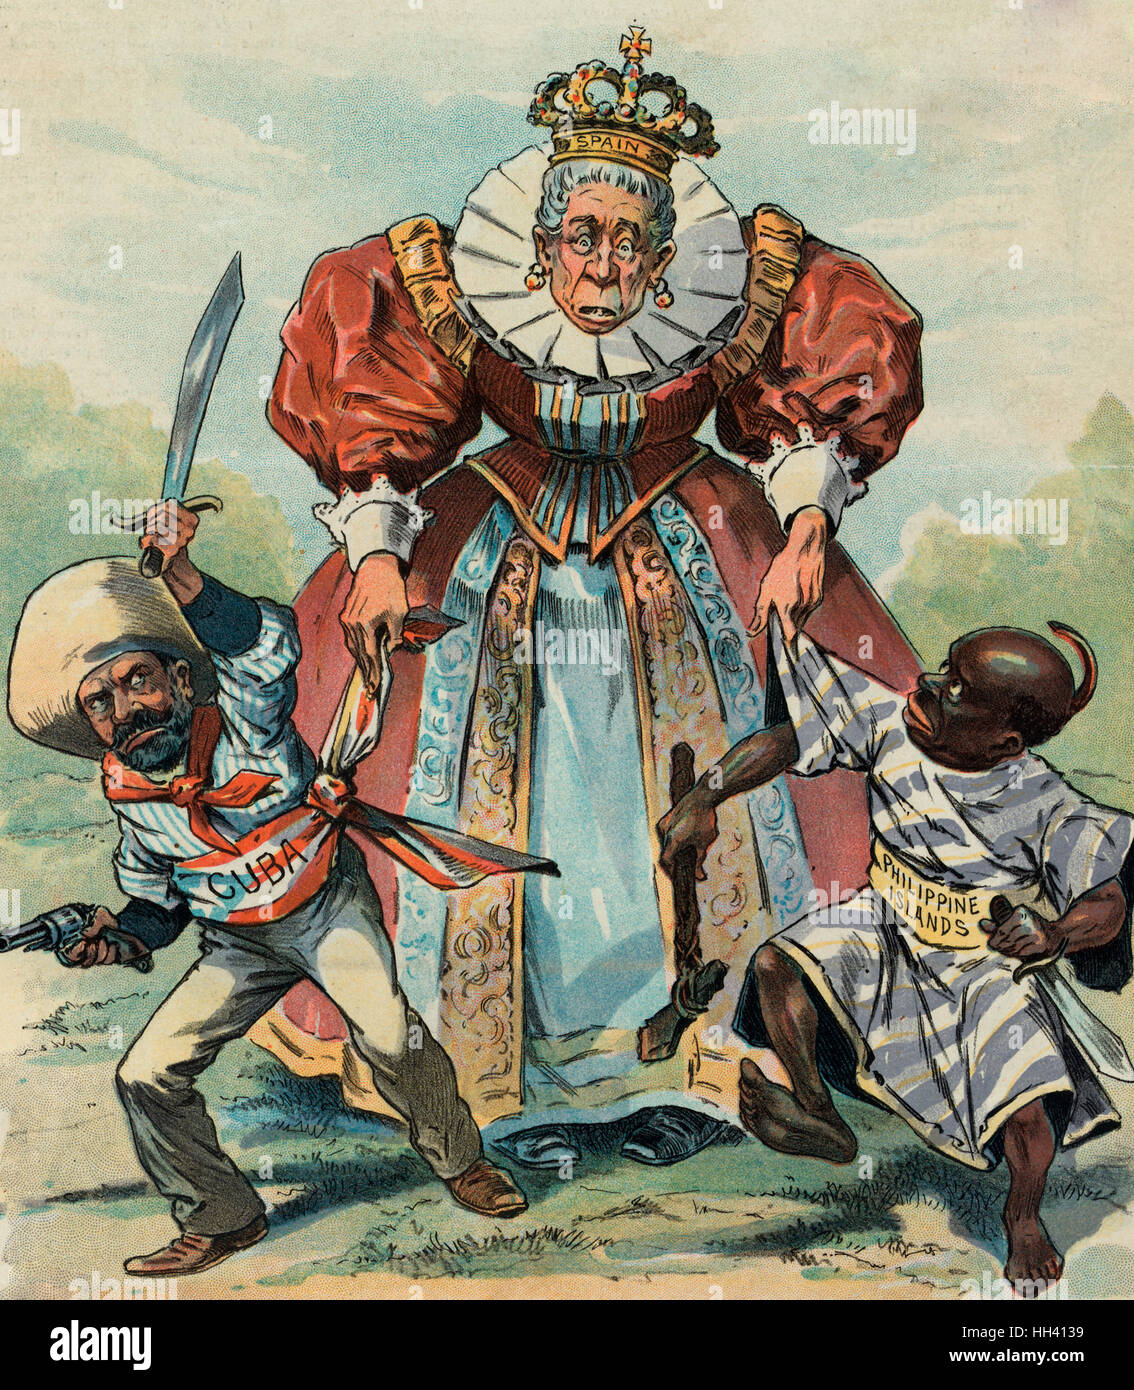 Sie ist immer zu schwach, um sie zu halten - Print zeigt eine ältere Frau, die mit der Bezeichnung "Spanien", möglicherweise María Cristina, Königin Regent, kämpfen, um Kontrolle über zwei winzige Figuren, eine beschriftete "Kuba", bewaffnet mit einer Pistole und Schwert, und die anderen beschriftete "philippinischen Inseln", mit einer groben Beil und Messer bewaffnet. Politische Karikatur in den Spanisch-Amerikanischen Krieg im Vorfeld. 1896 Stockfoto